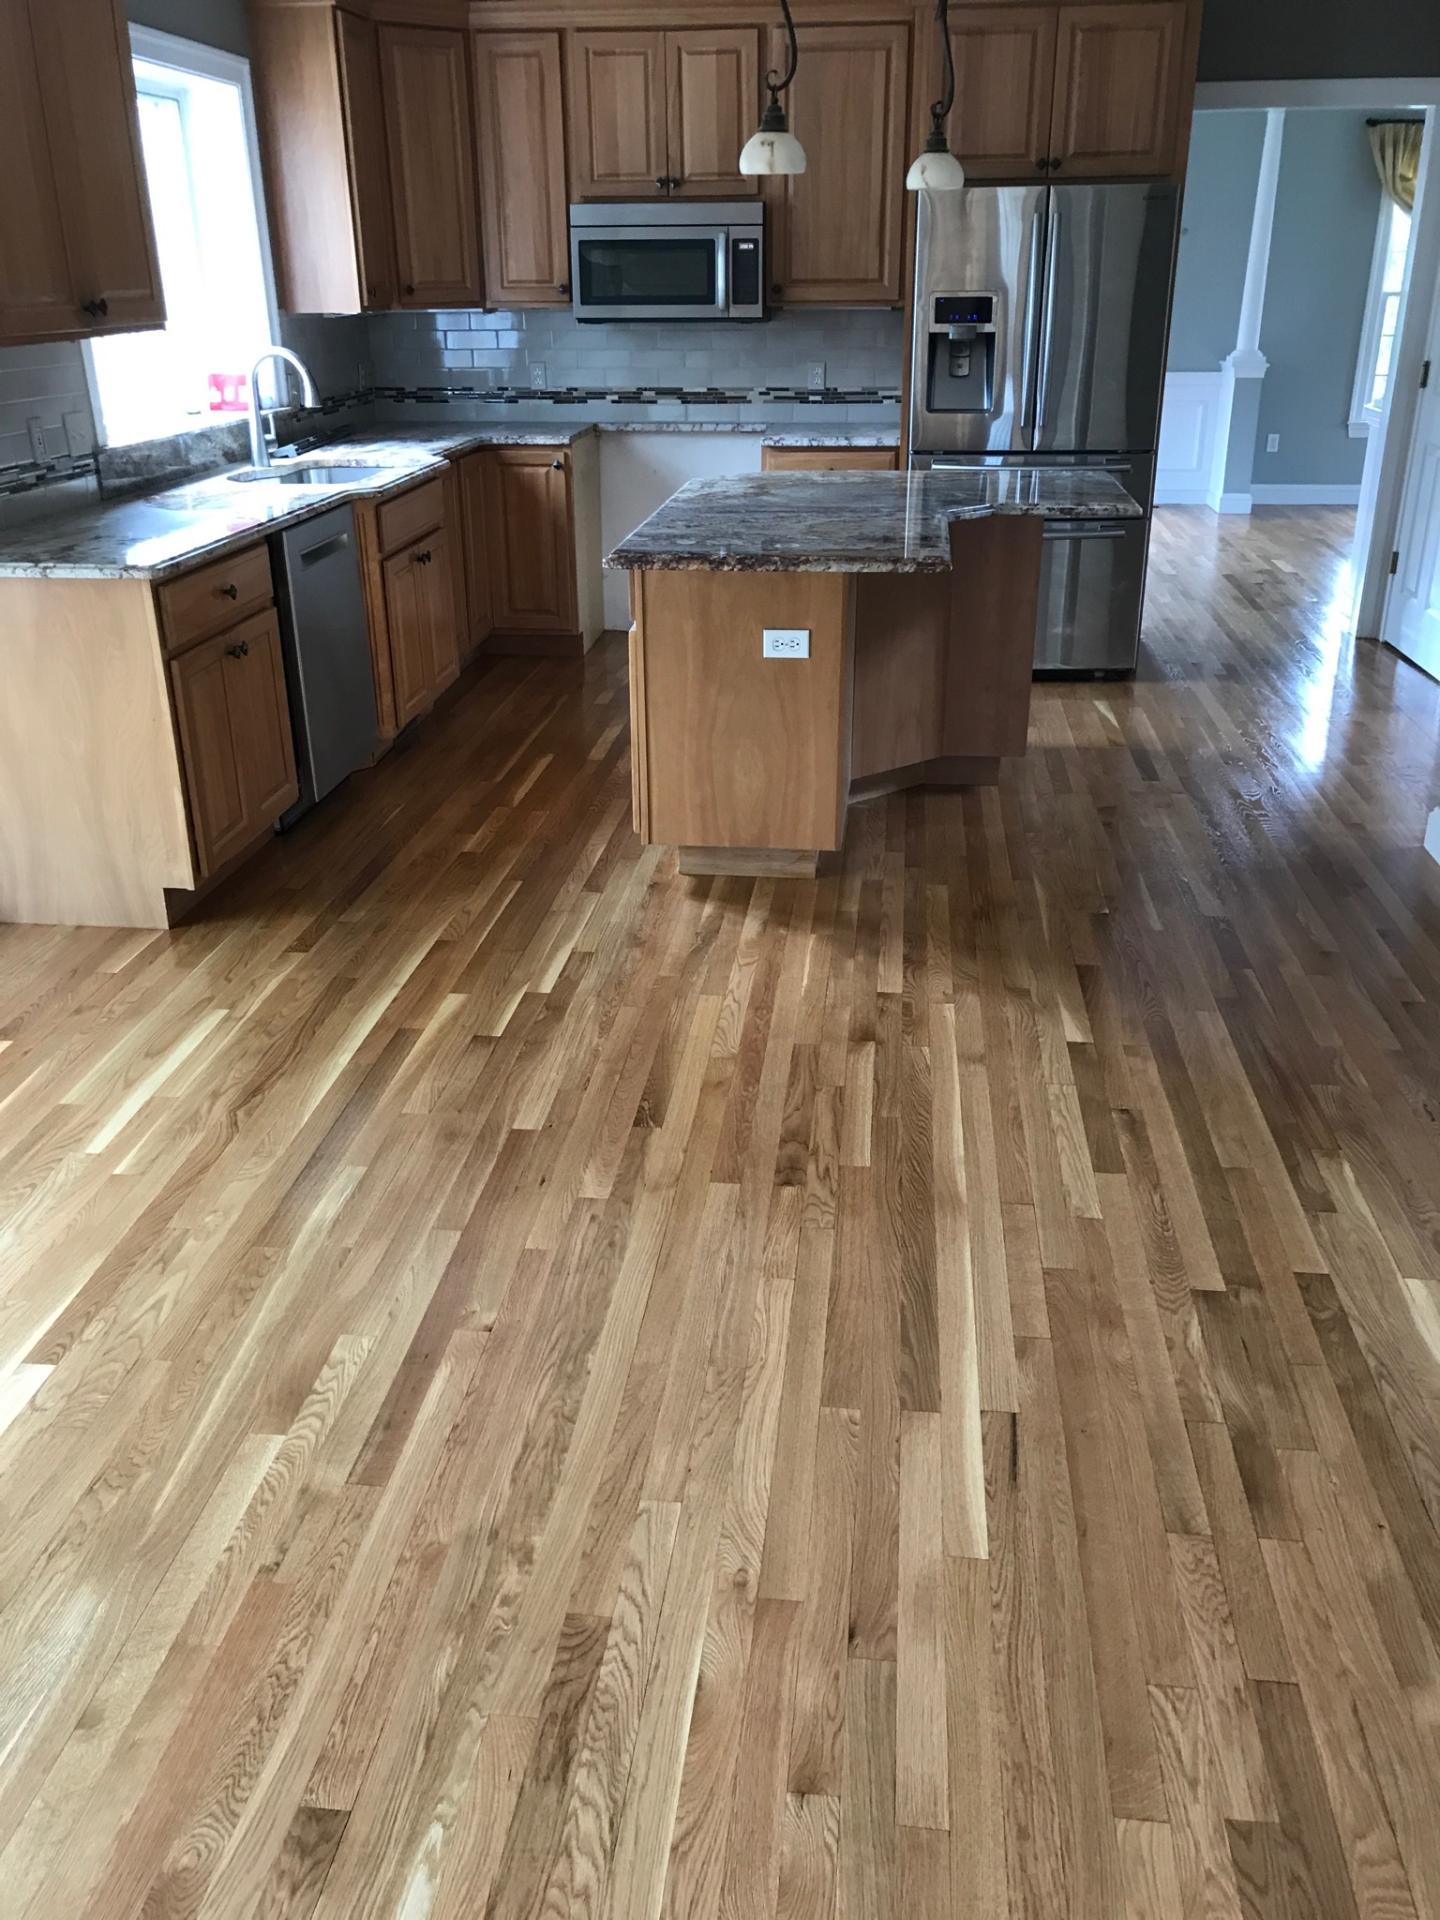 Natural White Oak Floors With Oil Based, Natural Finish Hardwood Floors